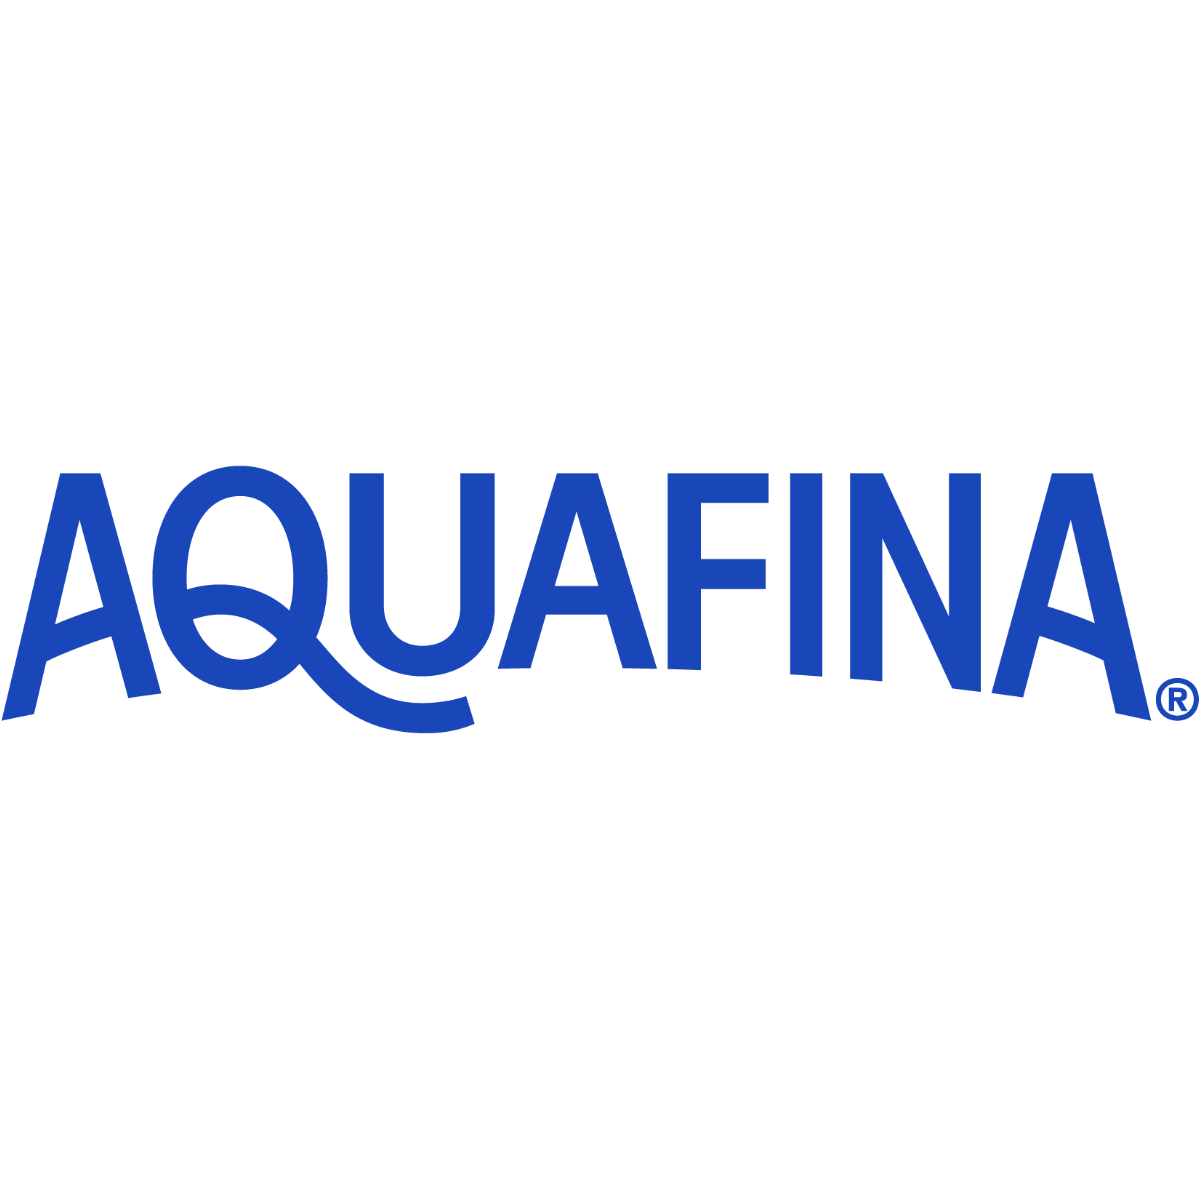 Aquafina Logo Transparent Image